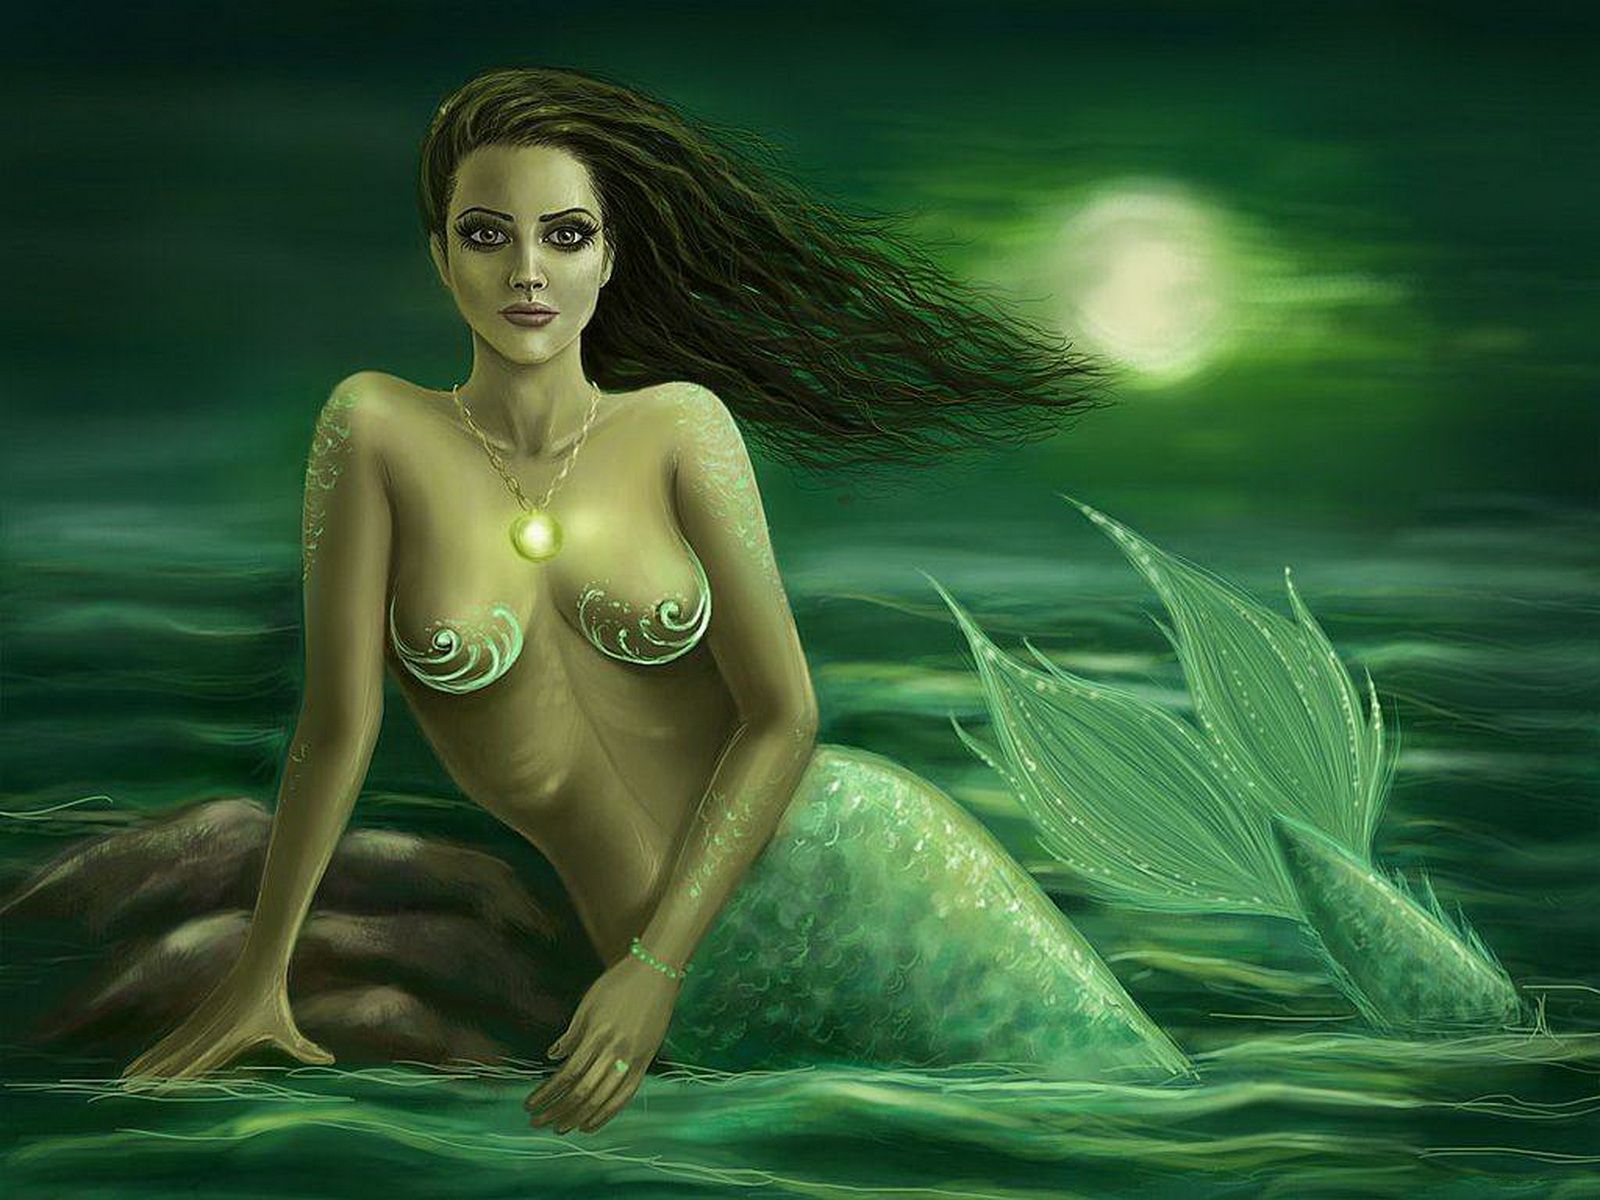 нарисованная девушка, зеленая русалка с расписными грудями. 3d заставка на рабочий стол